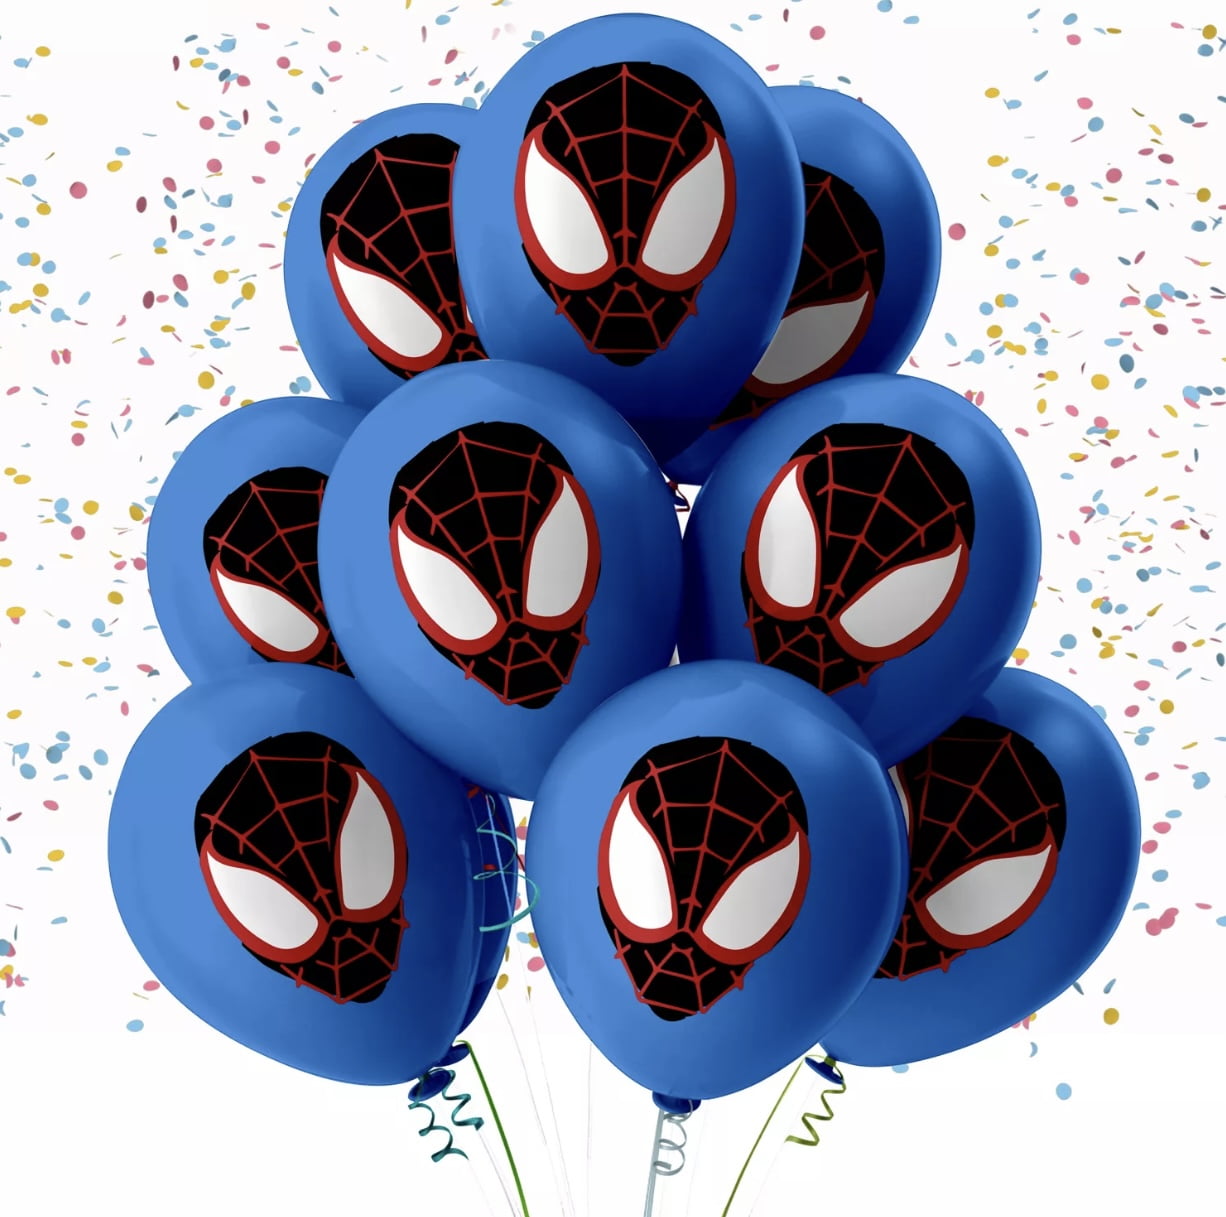 Spidey balloons 🎈🕷 Disponibles para tus piñatas! ✨ — #makeapartymx  #balloons #globos #spiderman #spidey #disney #superhero